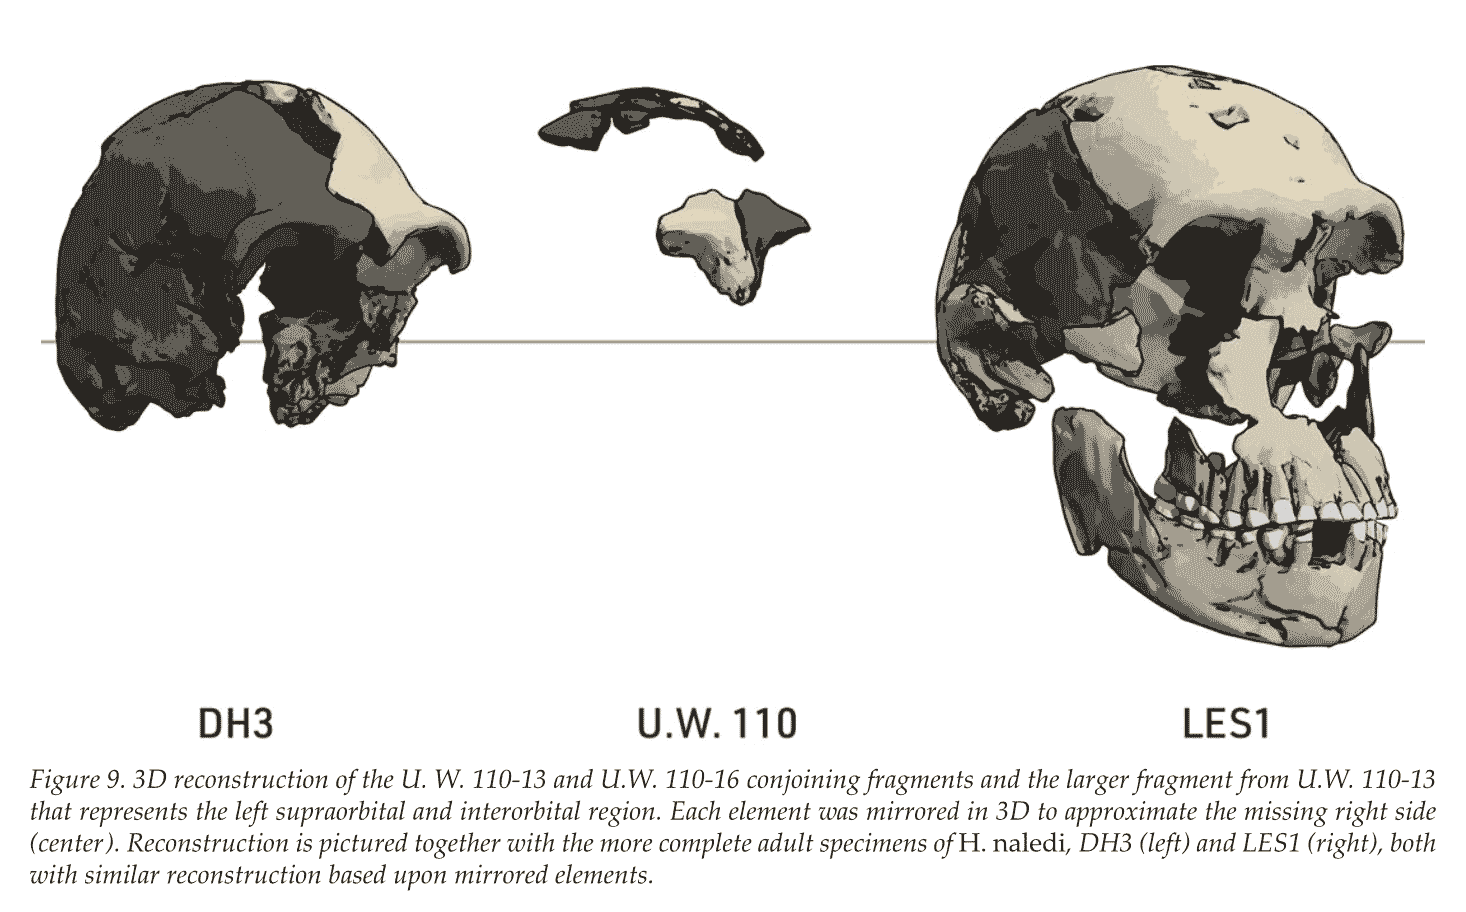 Skulls of Homo naledi incuding the fragmentary frontal bone of Leti in the center.